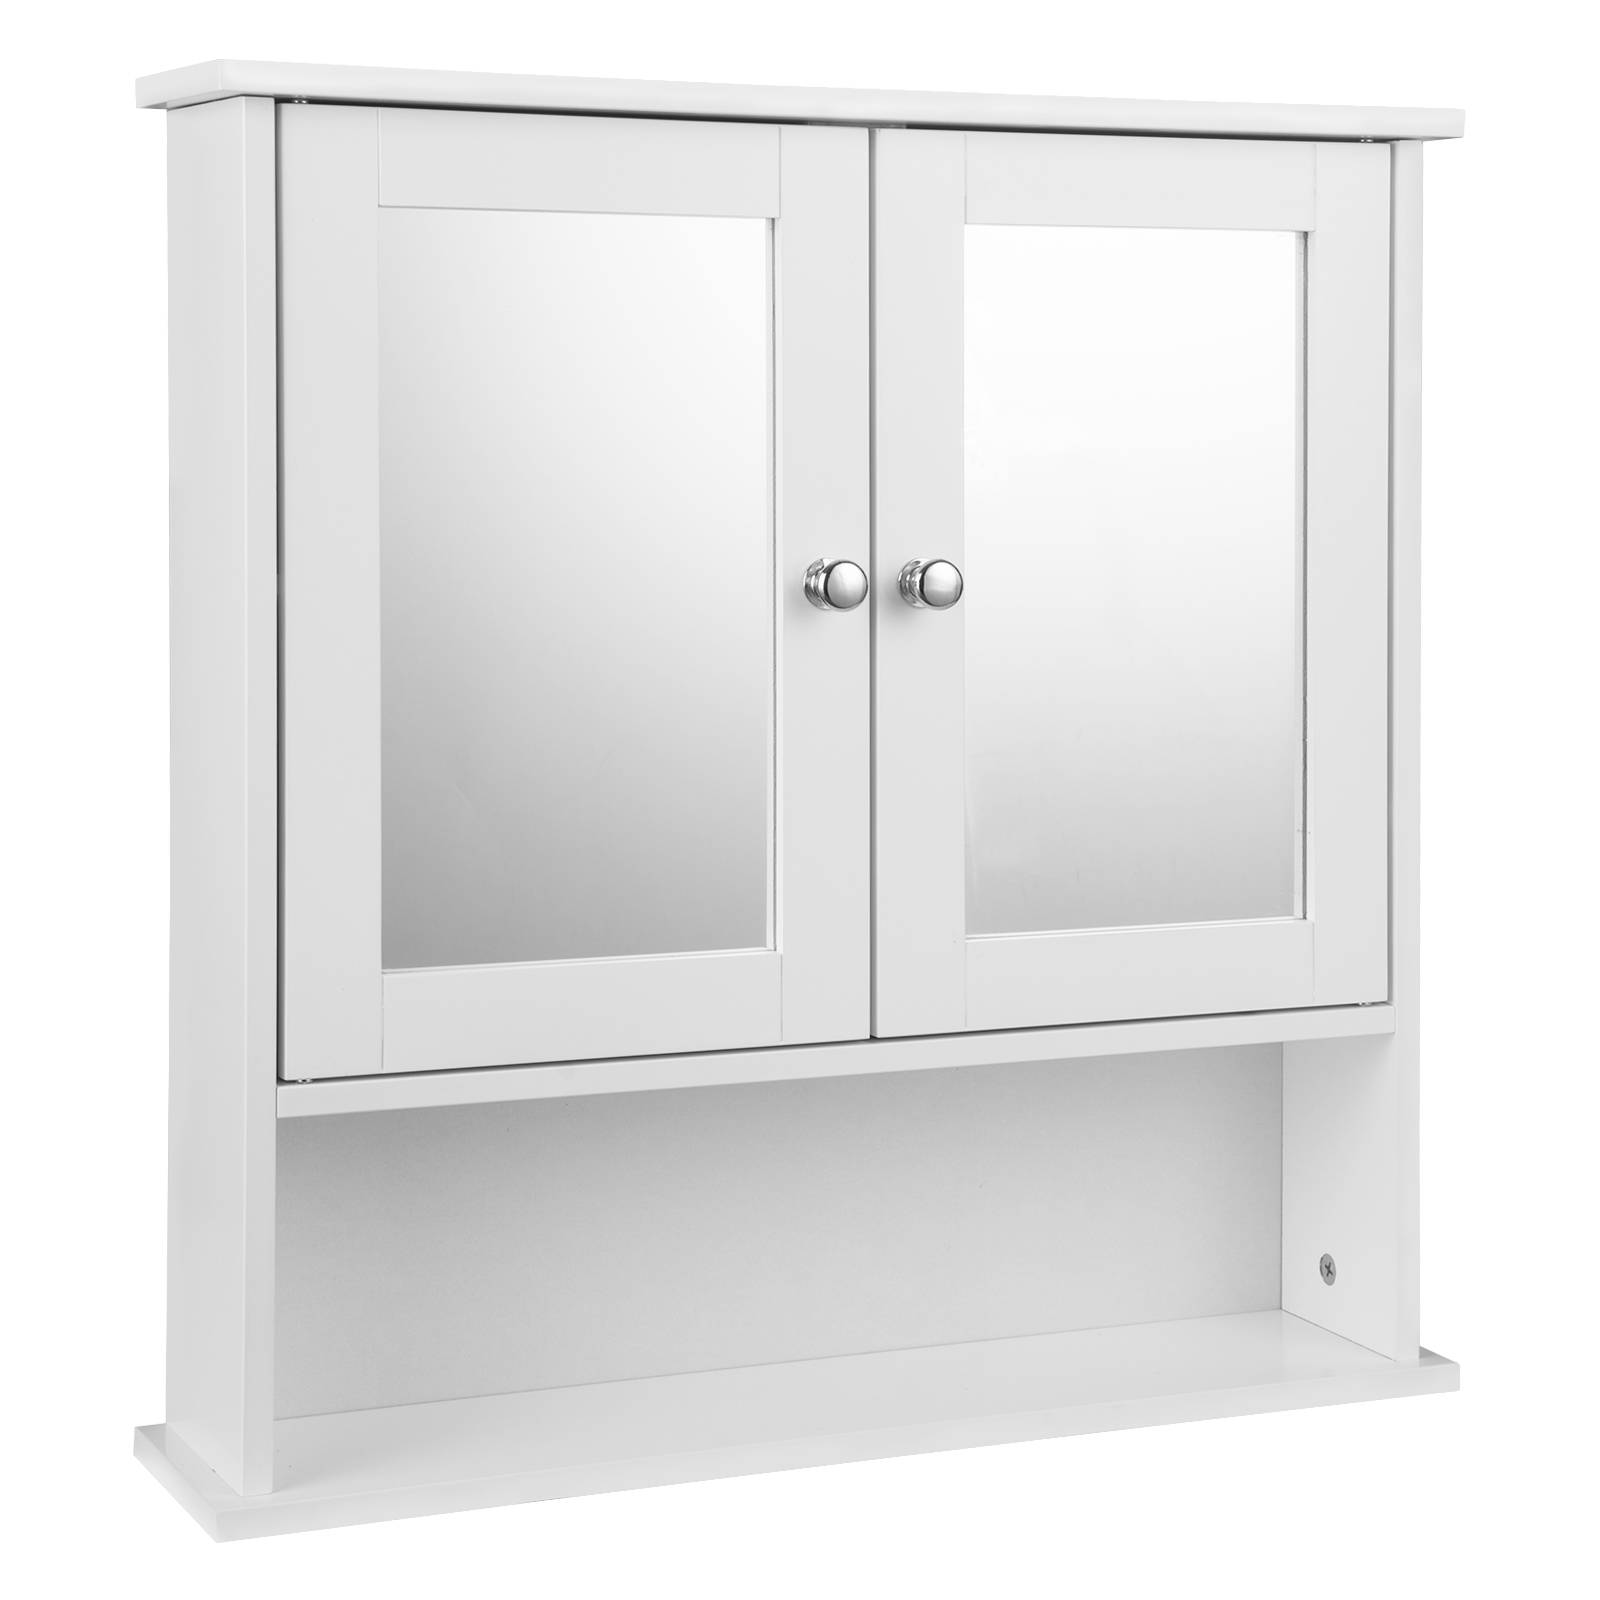 Spiegelschrank Badschrank Hängeschrank aus Holz, offenes Fach,  höhenverstellbarer Einlegeboden, weiß, 56 x 58 x 13 cm